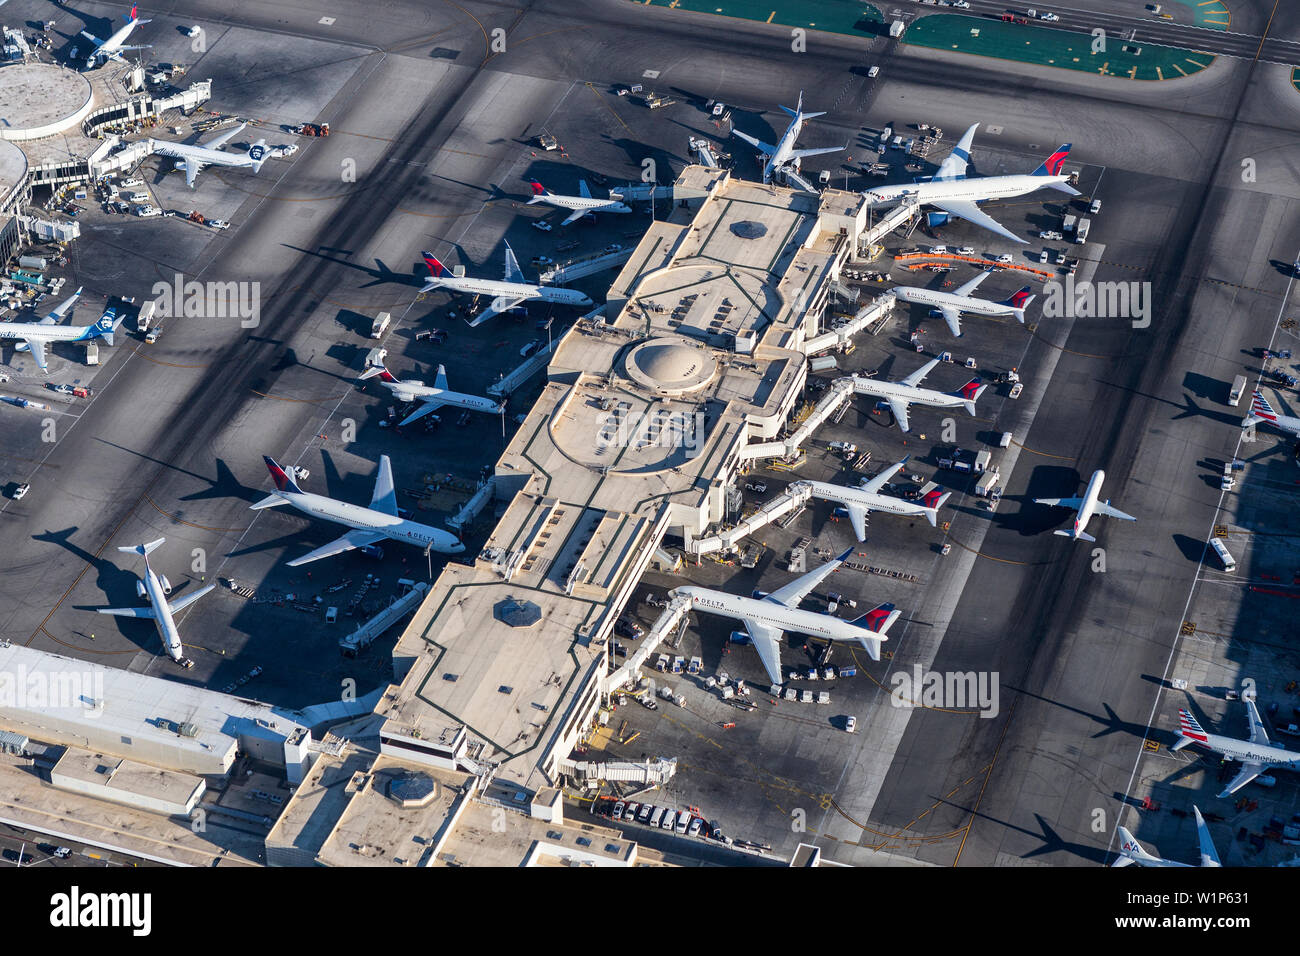 Los Angeles, Kalifornien, USA - 16. August 2016: Nachmittag Luftaufnahme des geschäftigen Los Angeles International Airport Terminals in Südkalifornien. Stockfoto